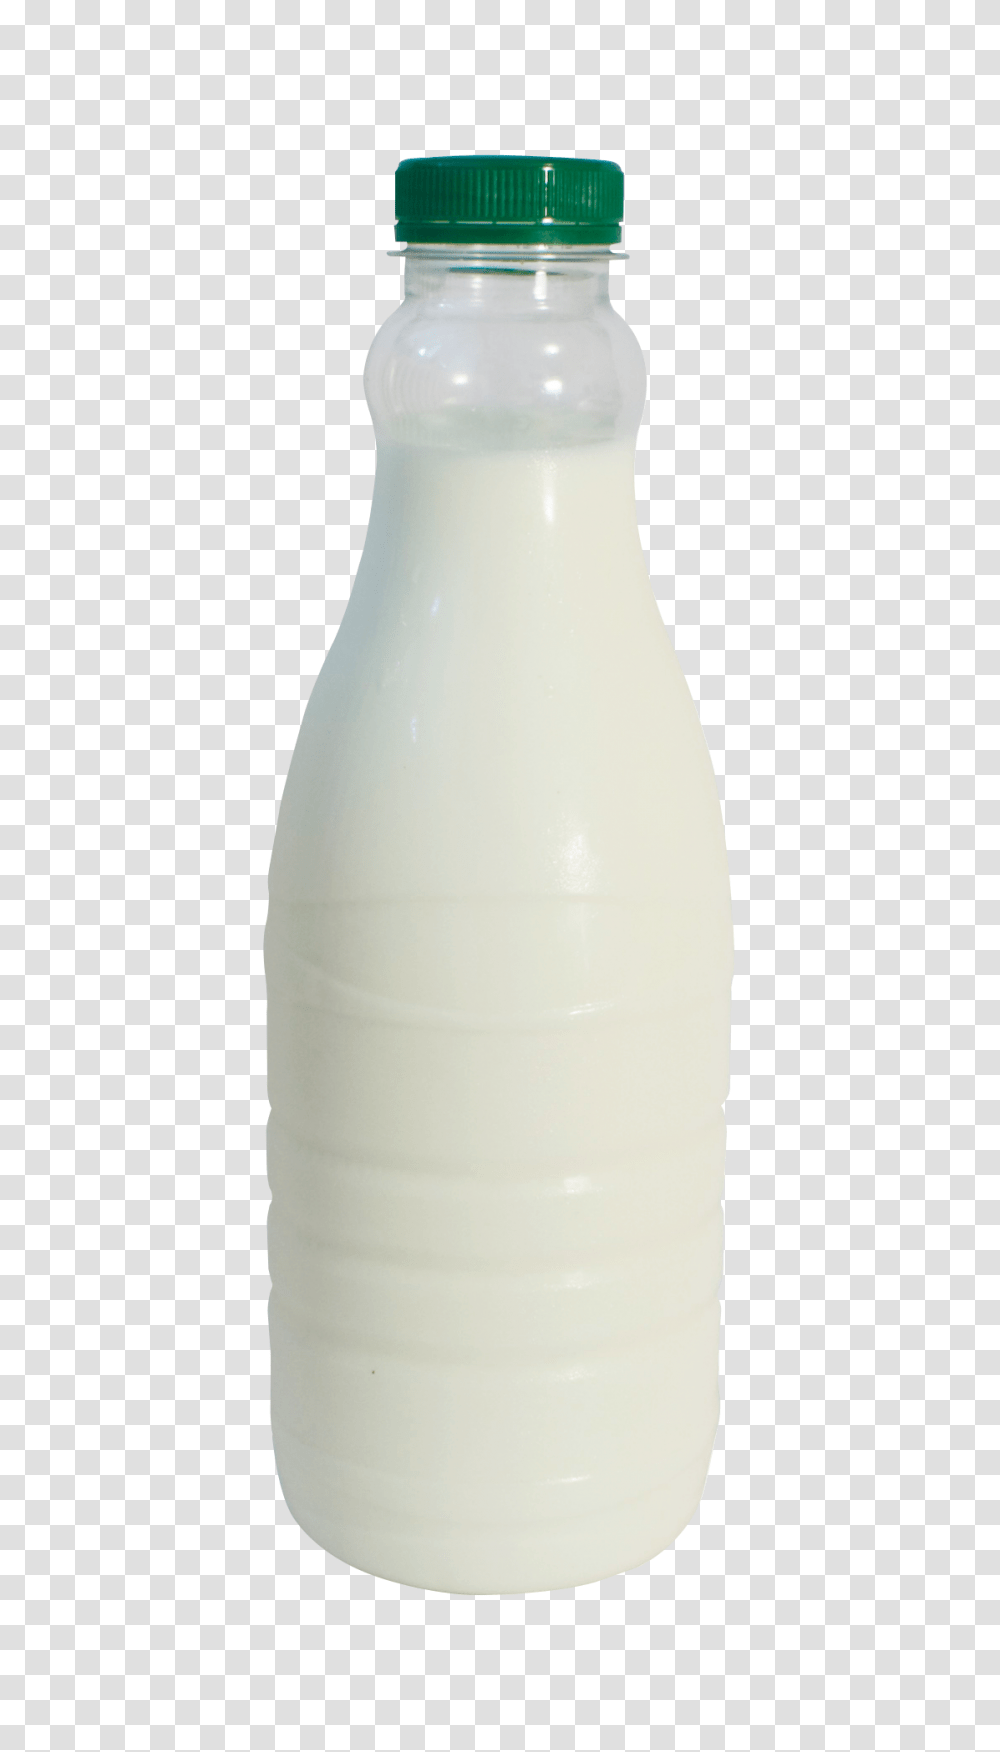 Milk Bottle Image, Drink, Shaker, Beverage, Dairy Transparent Png